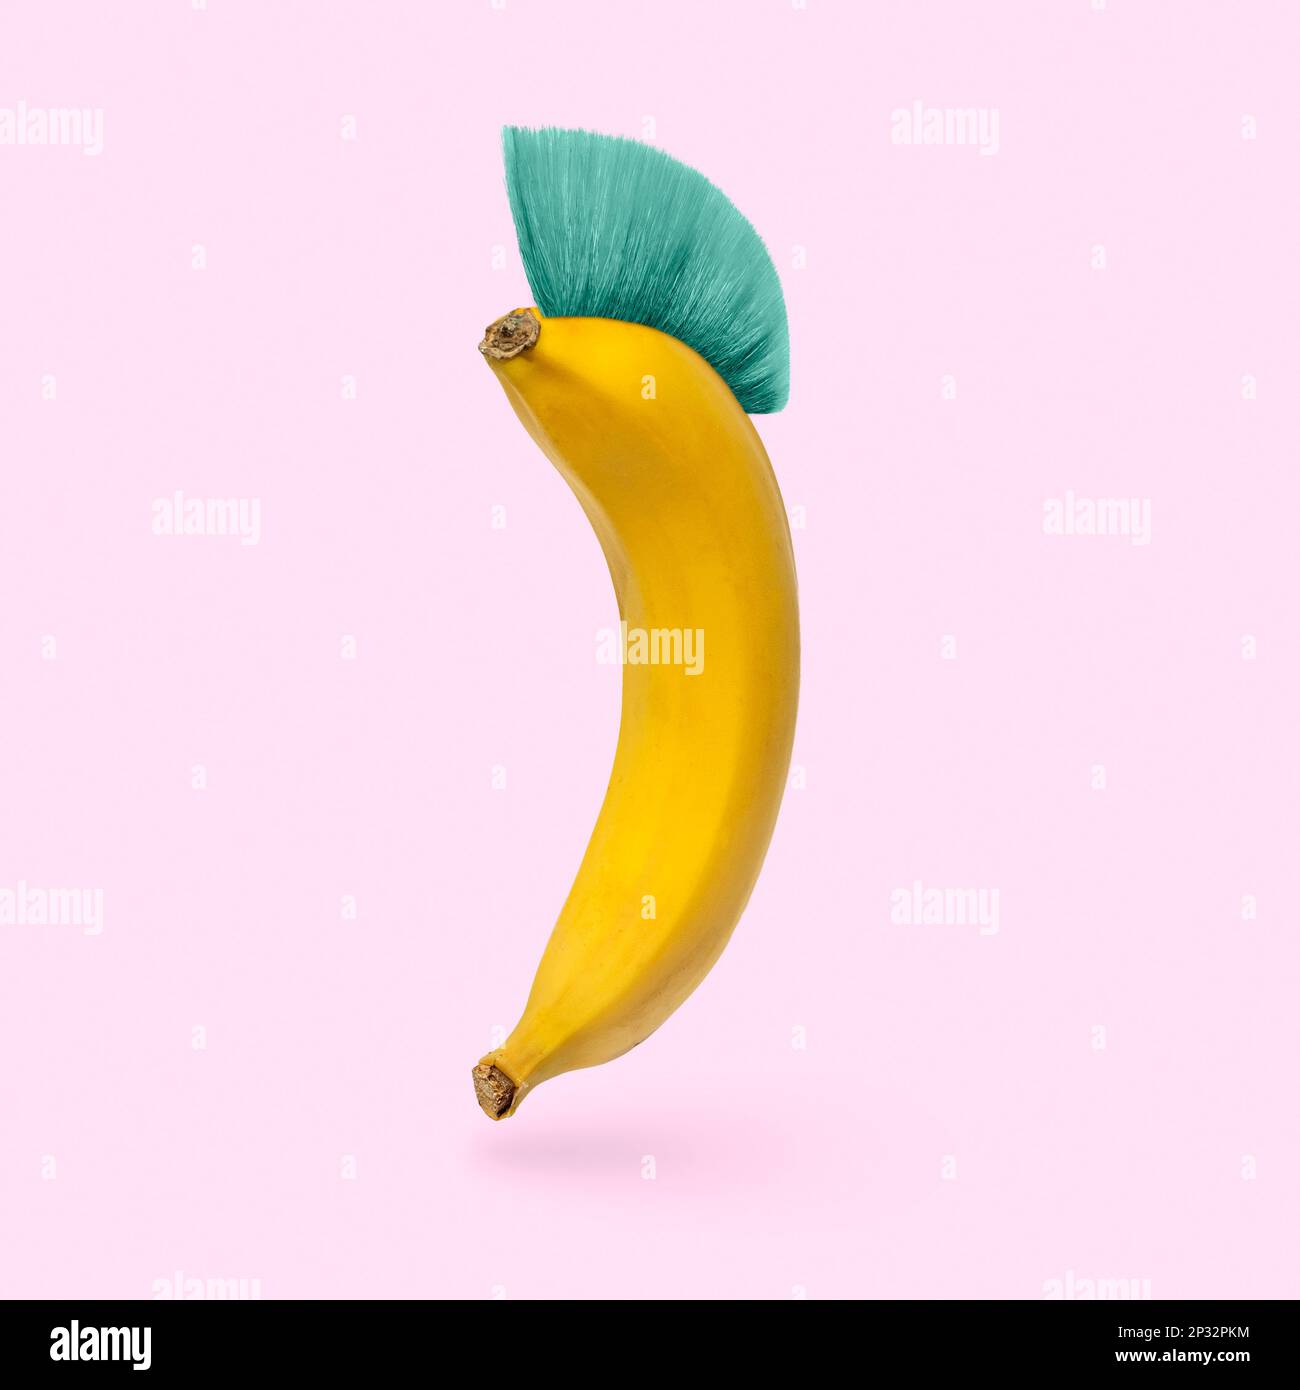 L'humour est une banane gaie avec une coiffure mohawk sur fond rose. Concept minimal d'humour et surréaliste. Photo de haute qualité Banque D'Images